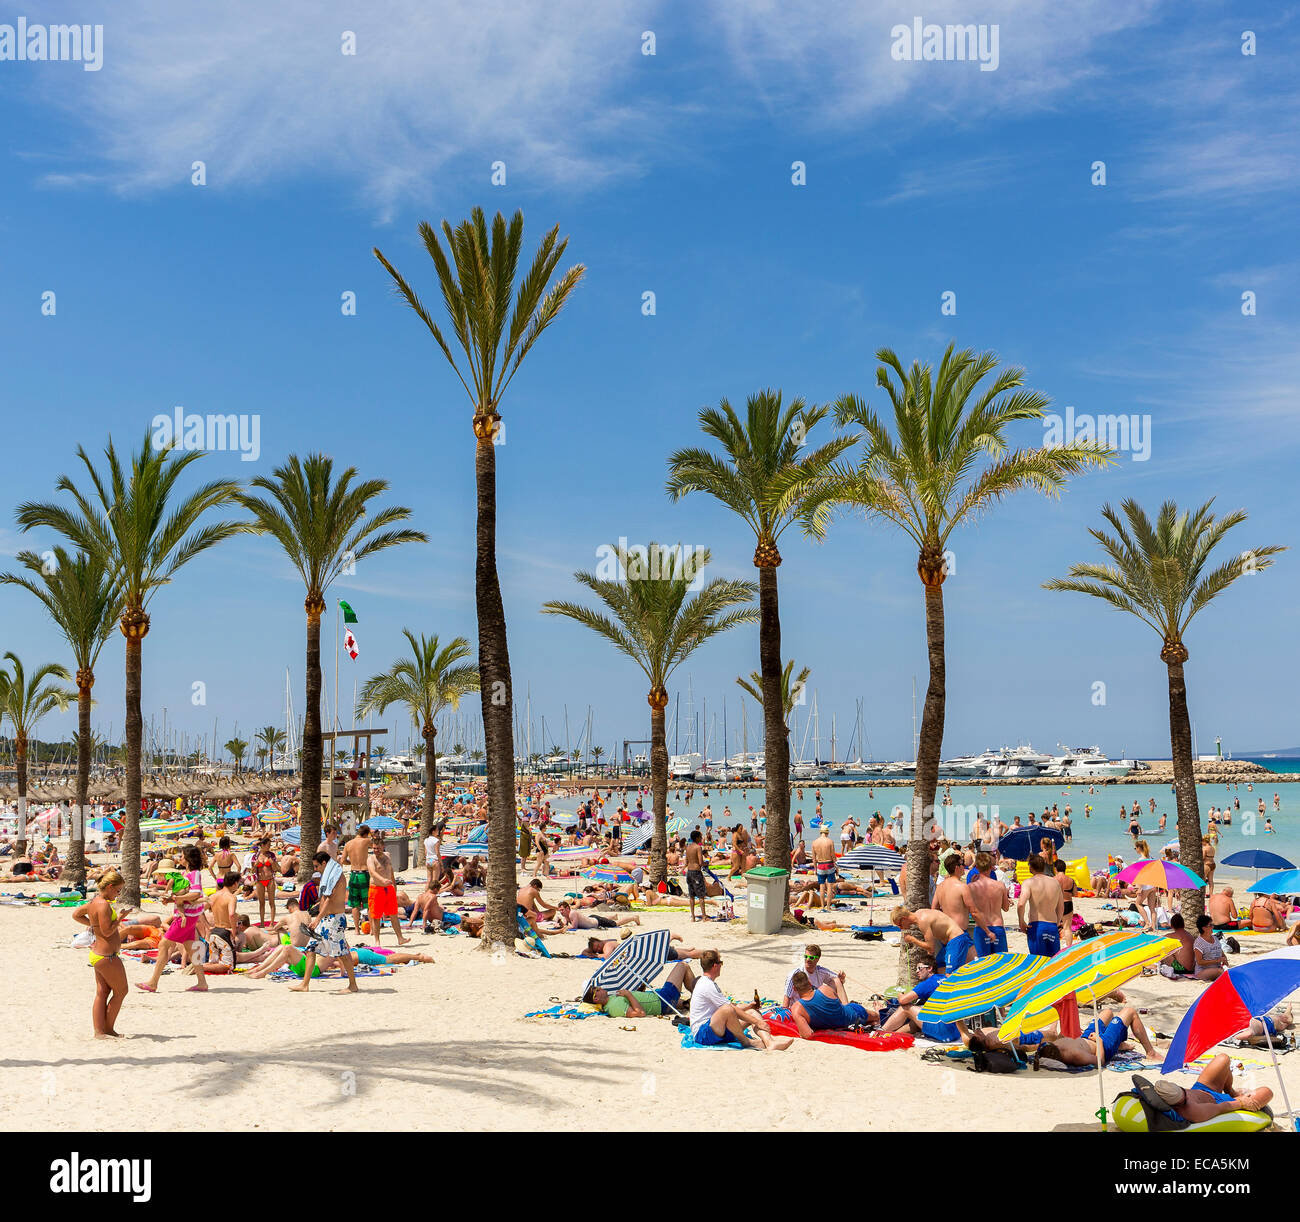 Pleine plage, Playa de Palma, dans la baie de Palma, Majorque, Îles Baléares, Espagne Banque D'Images